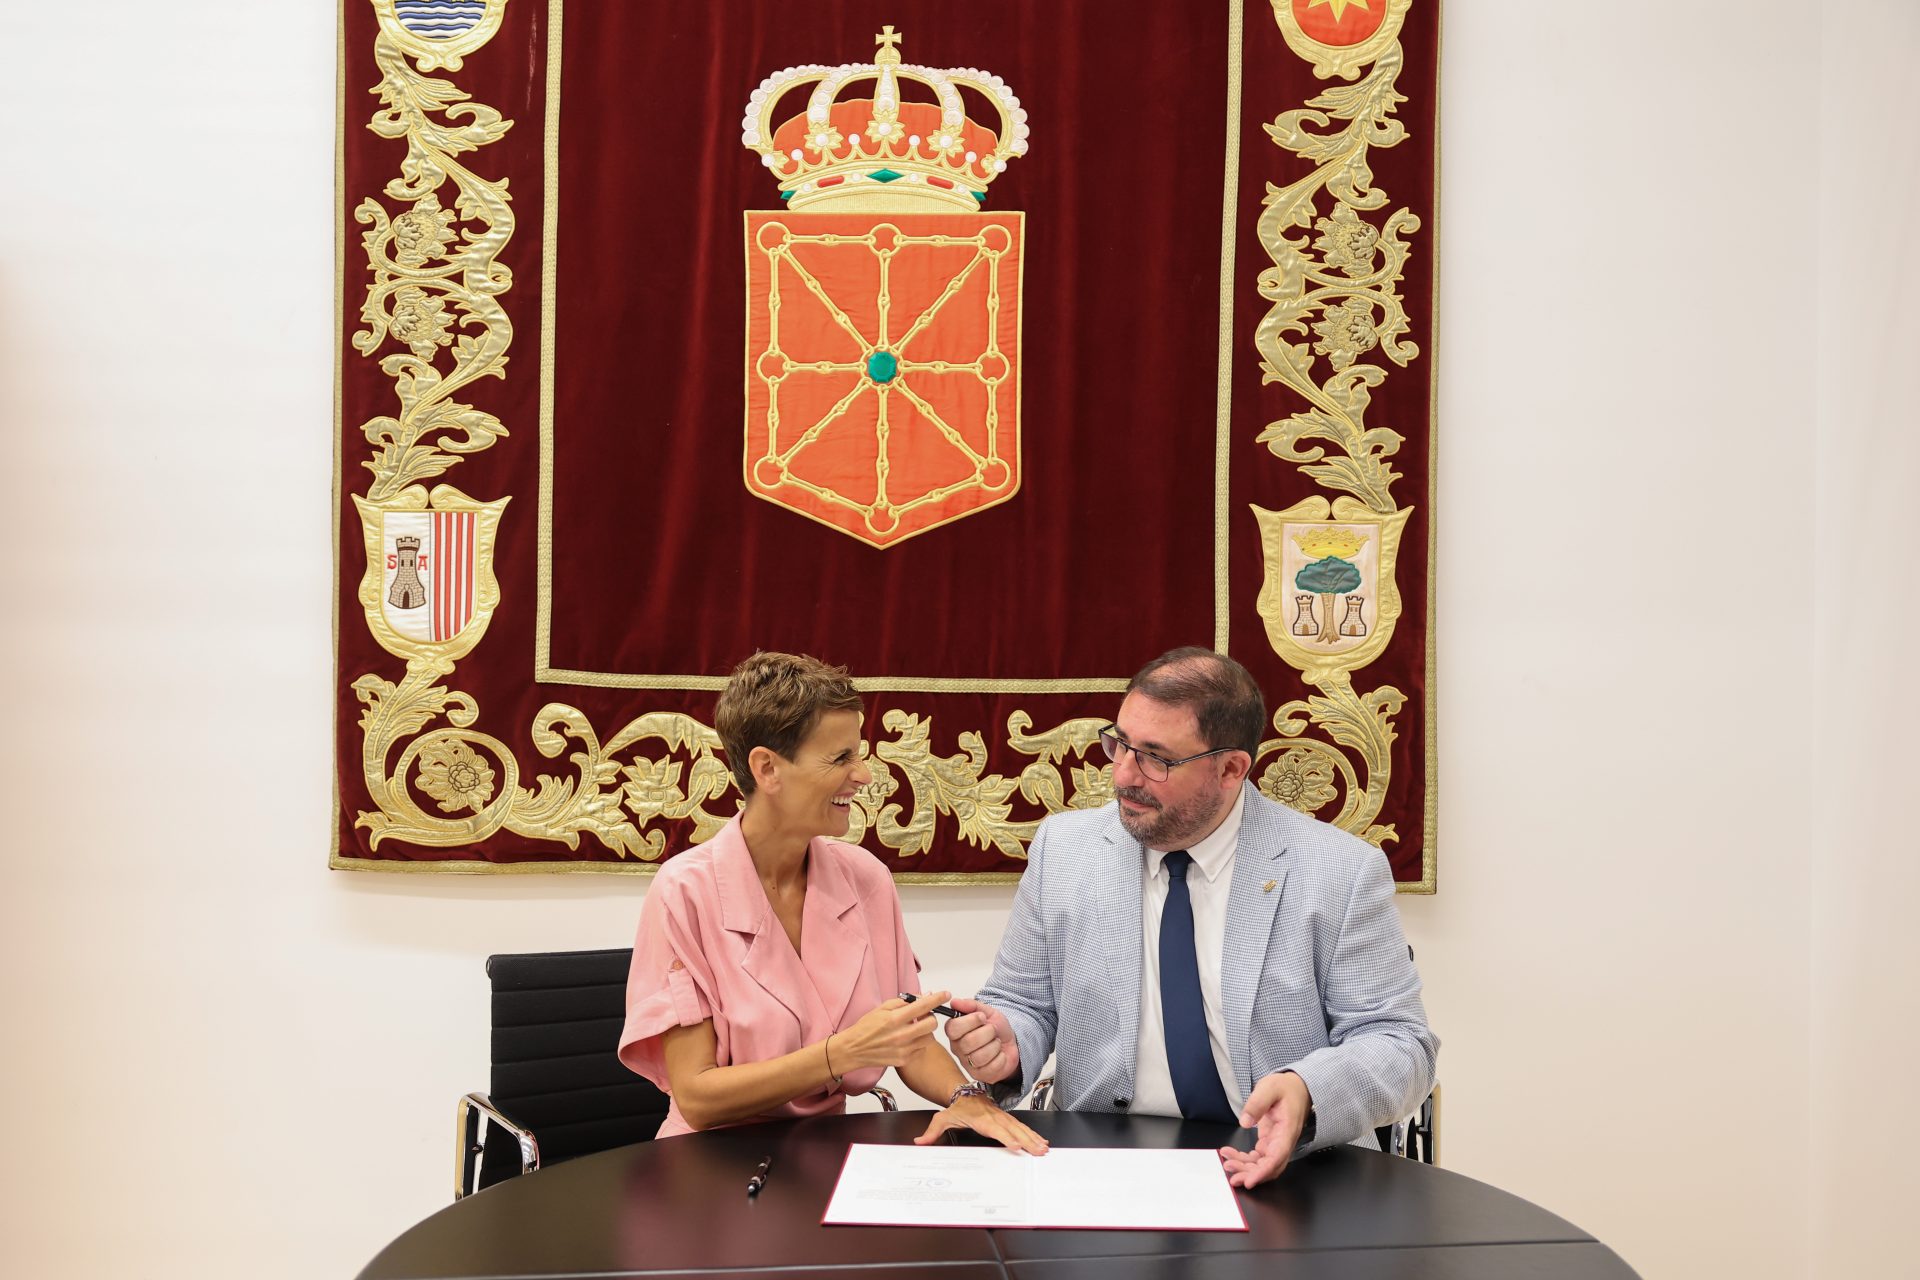 Imagen de la firma de la propuesta del presidente del Parlamento foral, Unai Hualde, para que la candidata socialista Maria Chivite se someta a la investidura como presidenta de Navarra